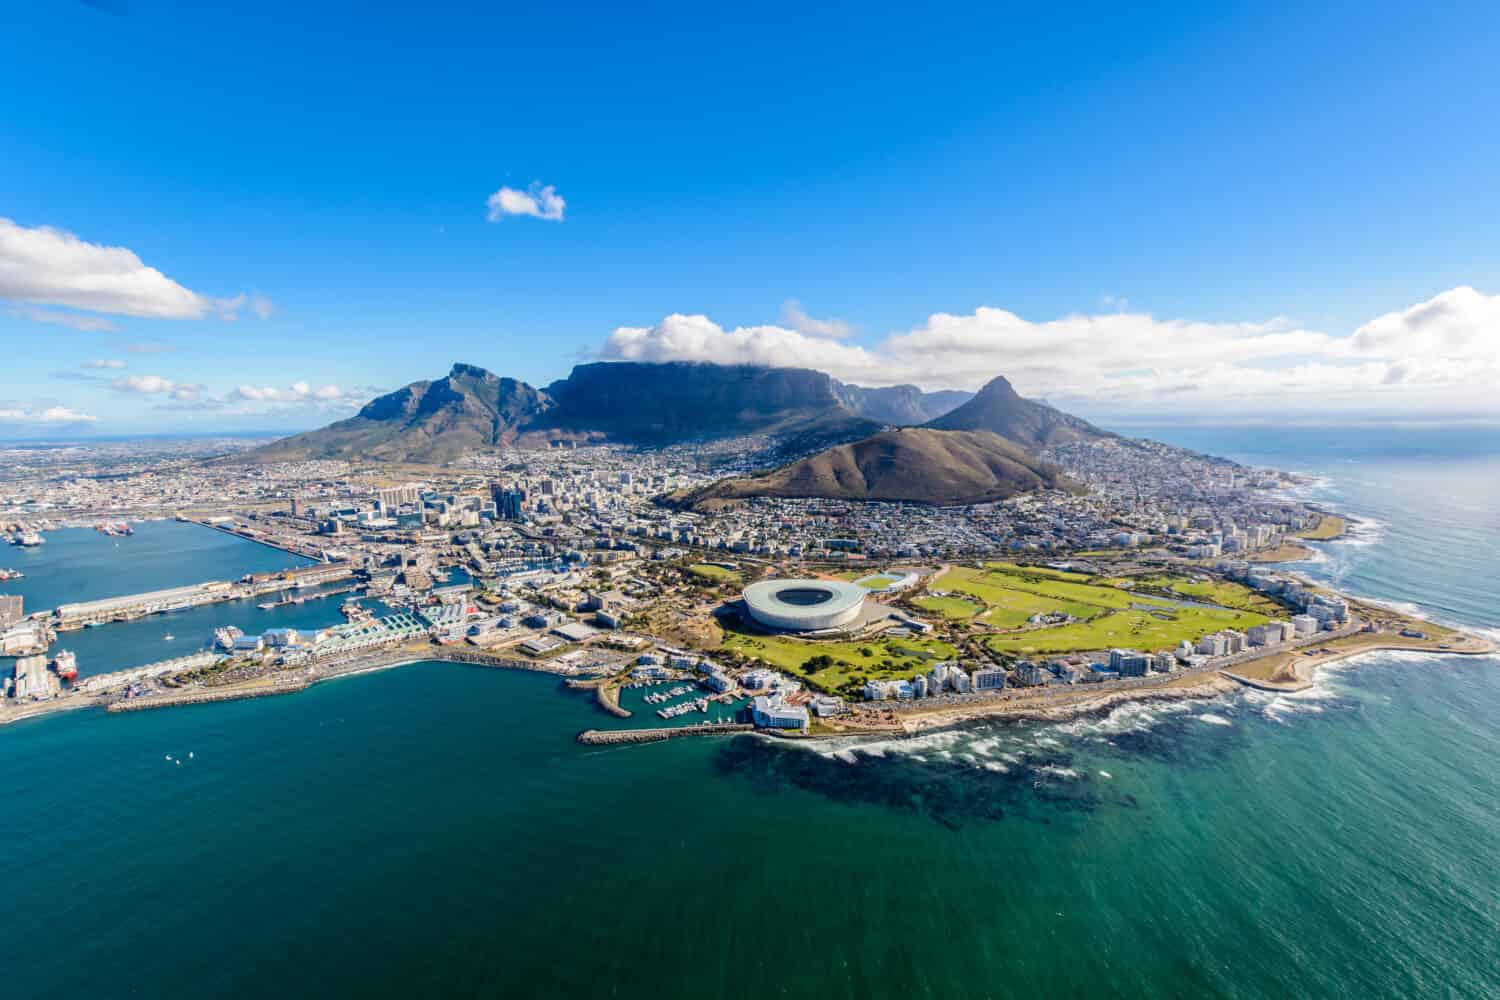 Vista aerea di Cape Town, Sud Africa in un pomeriggio soleggiato.  Foto scattata da un elicottero durante il tour aereo di Città del Capo